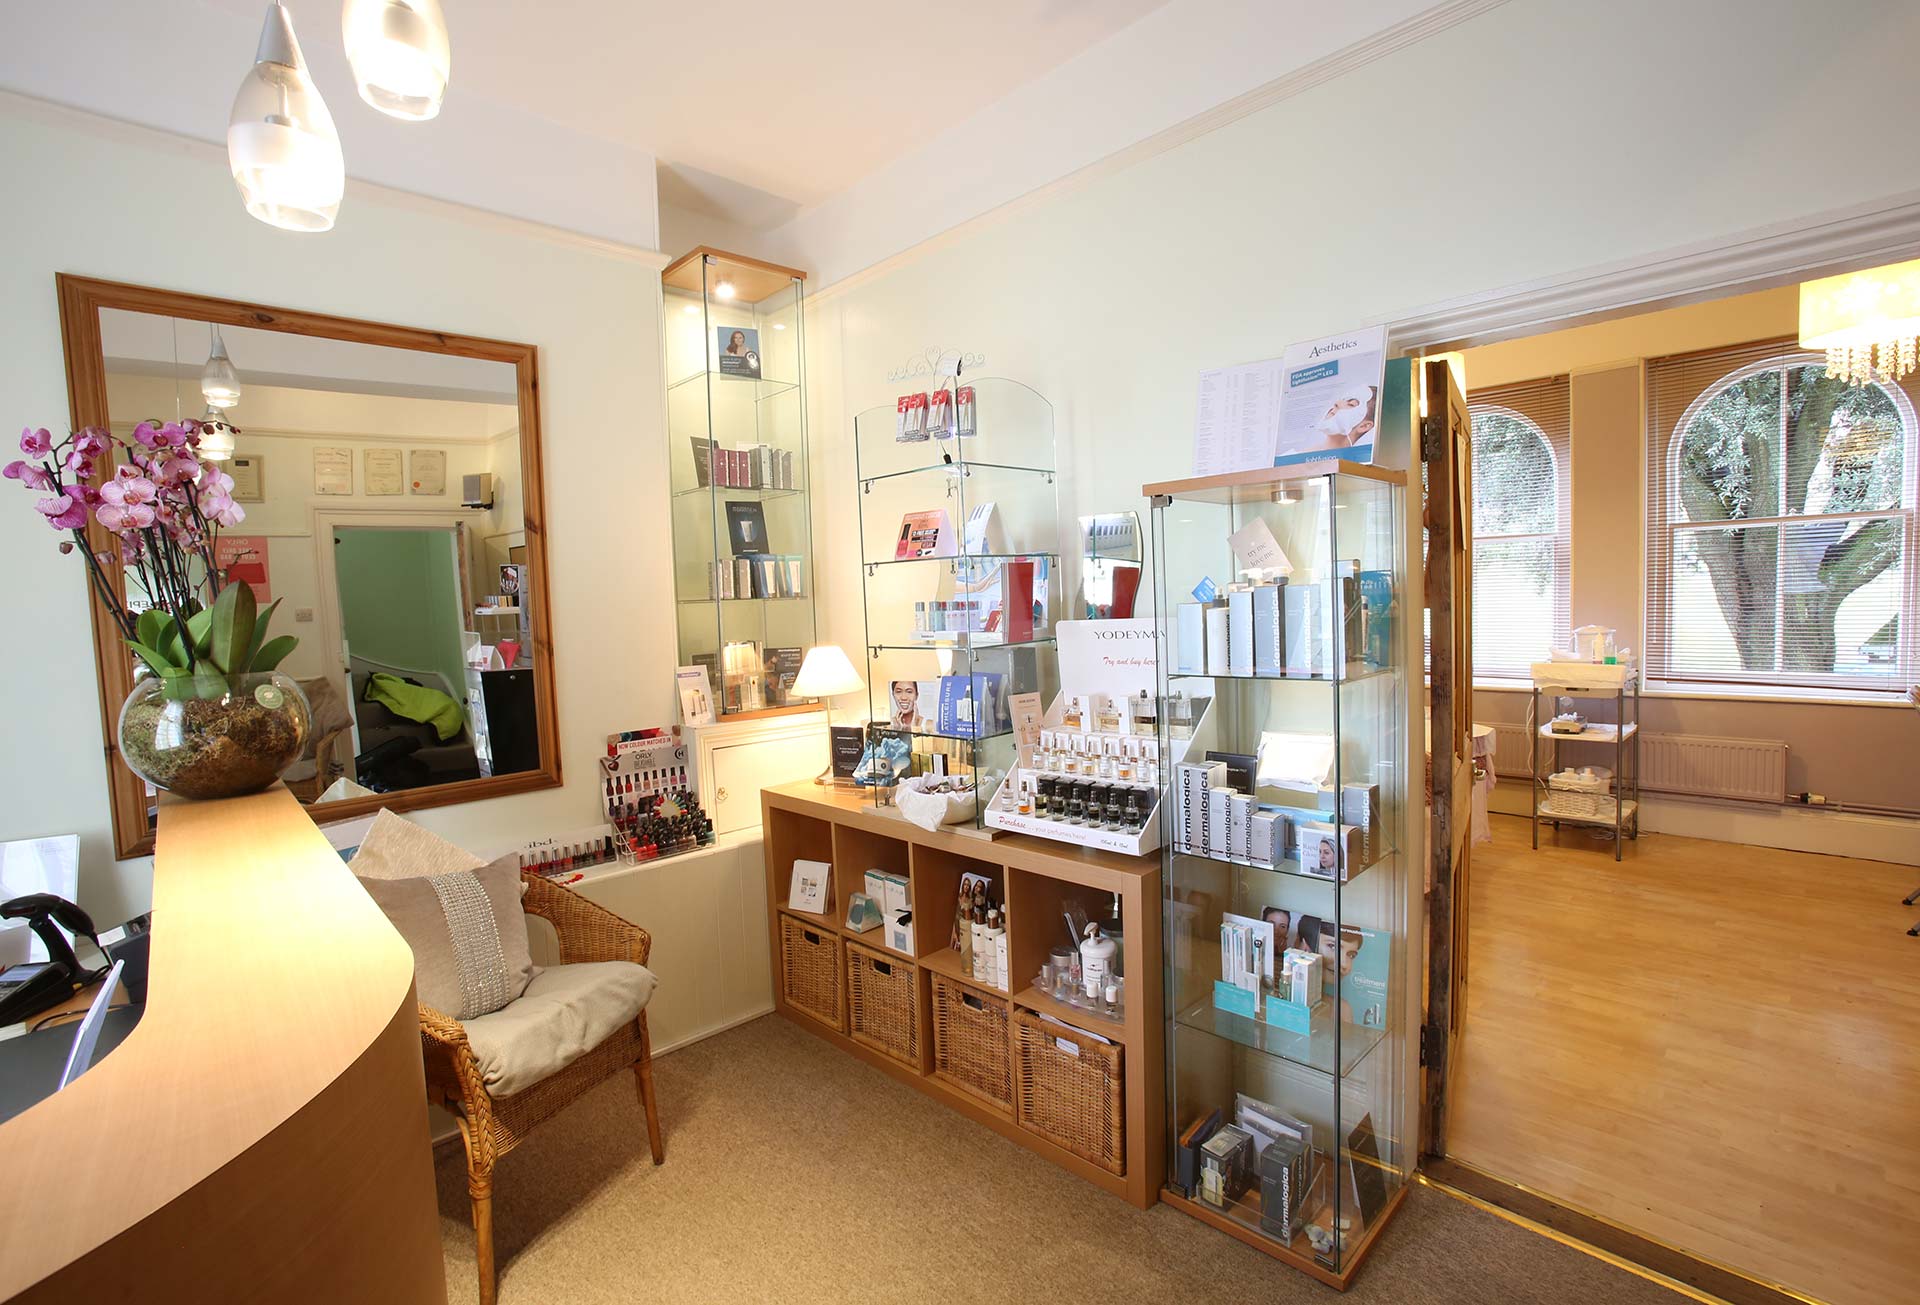 About Just Beauty Stroud Salon